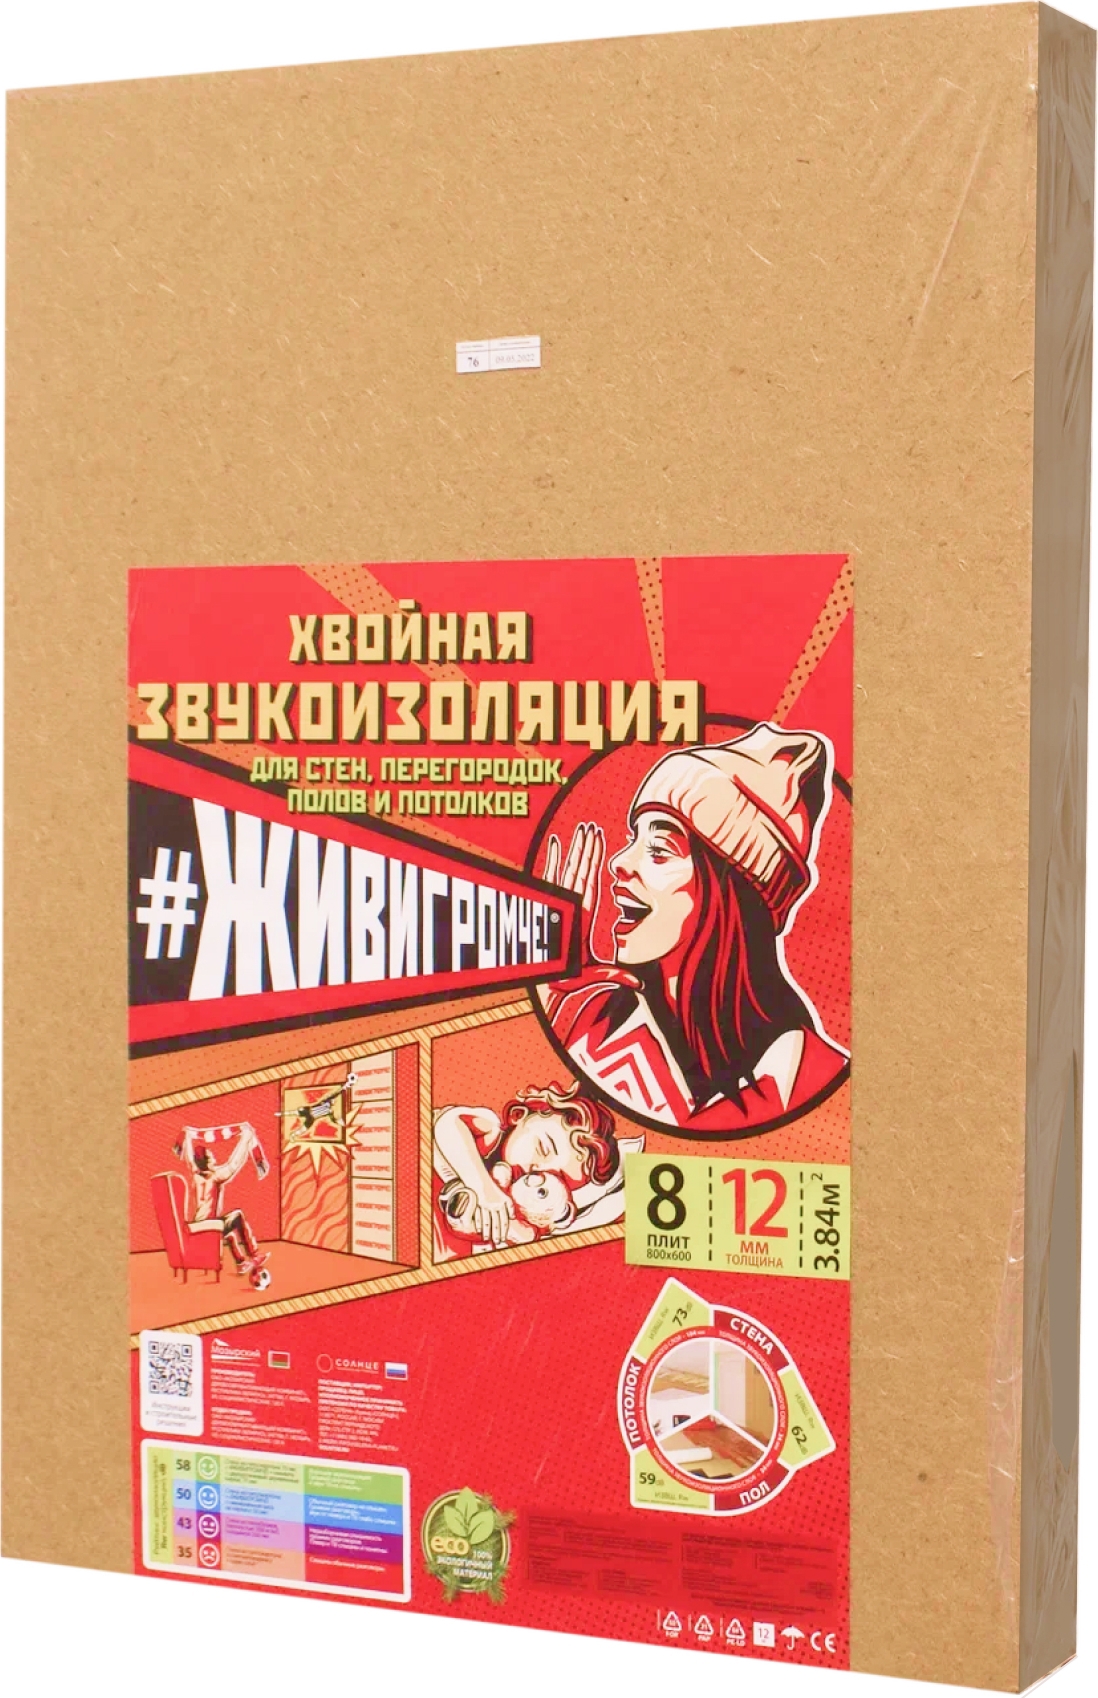 Грунтовки в Москве, цены: купить грунтовку в каталоге с фото и доставкой